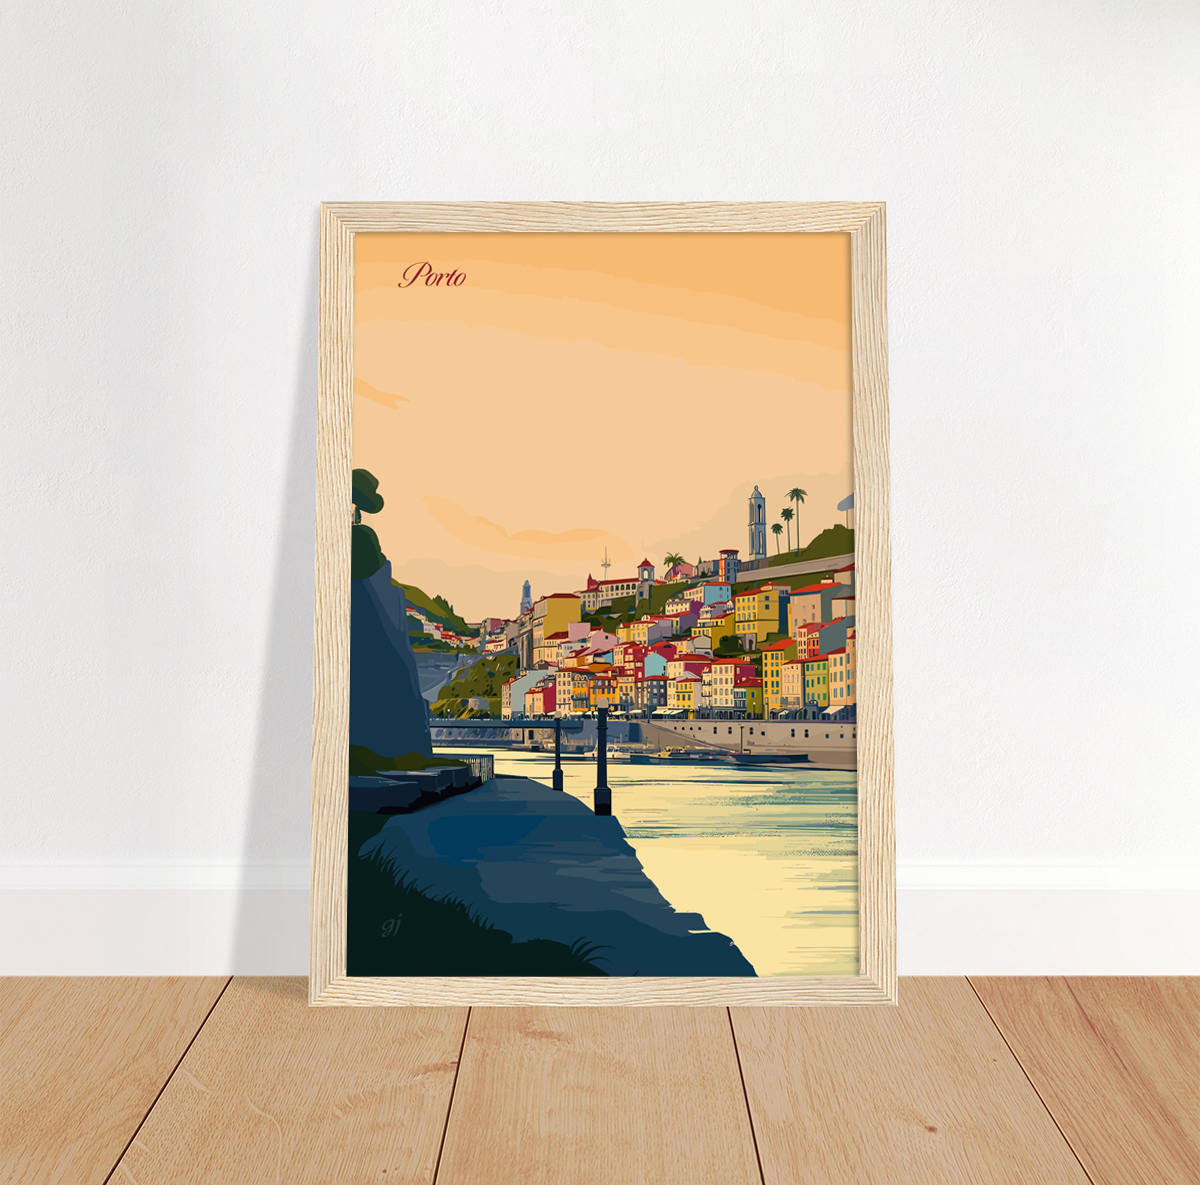 Porto poster by bon voyage design